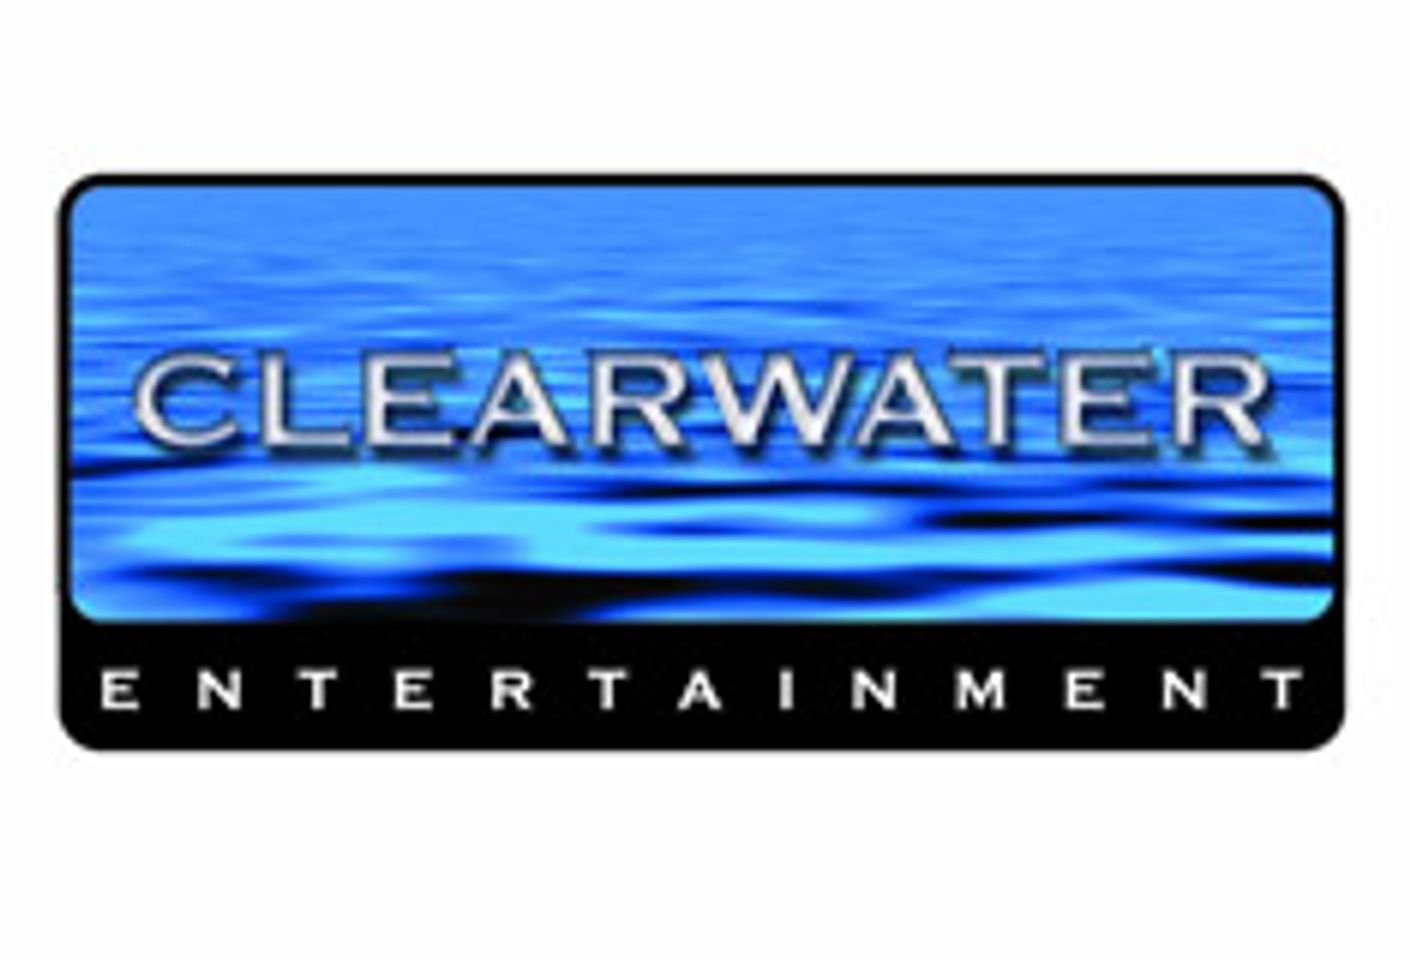 Clearwater Softie Rents Through Netflix